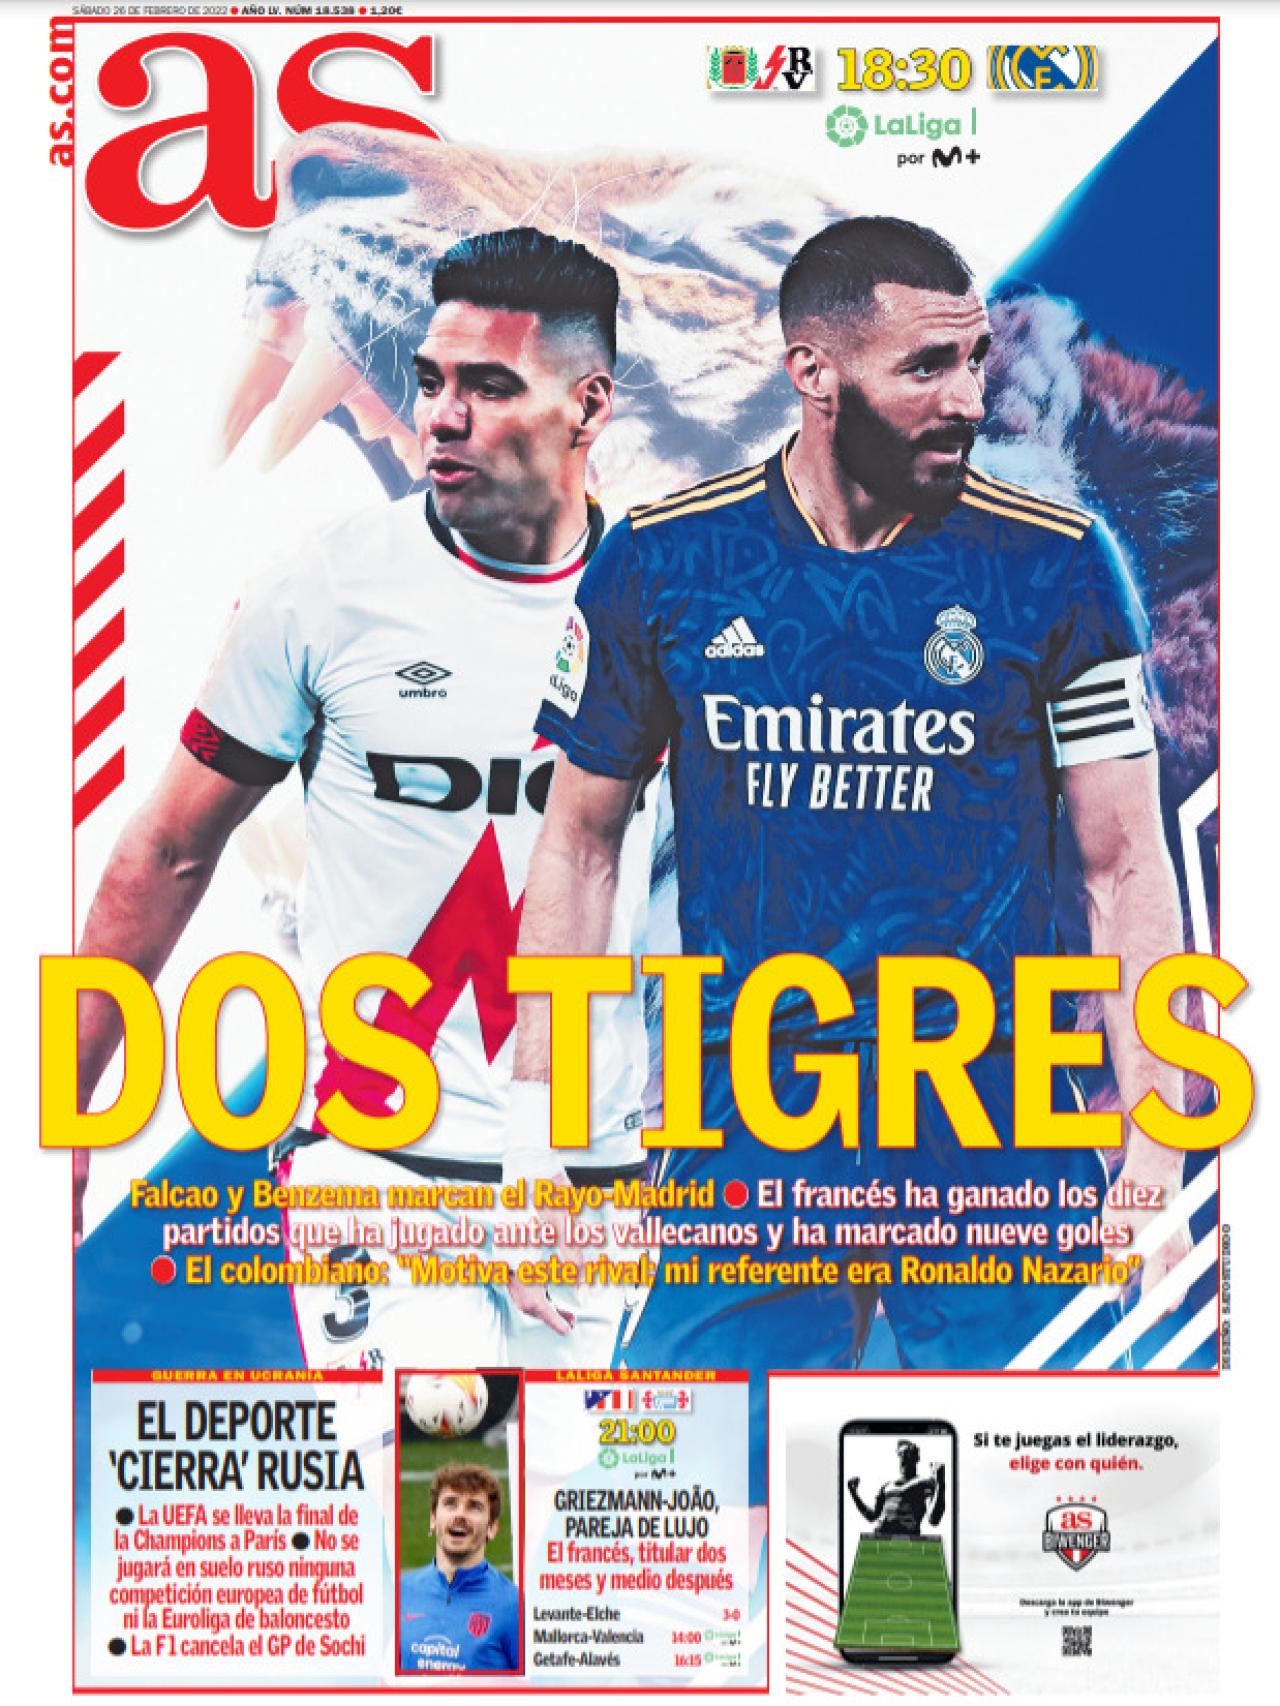 La portada periódico AS (sábado, 26 de febrero del 2022): "Dos tigres"